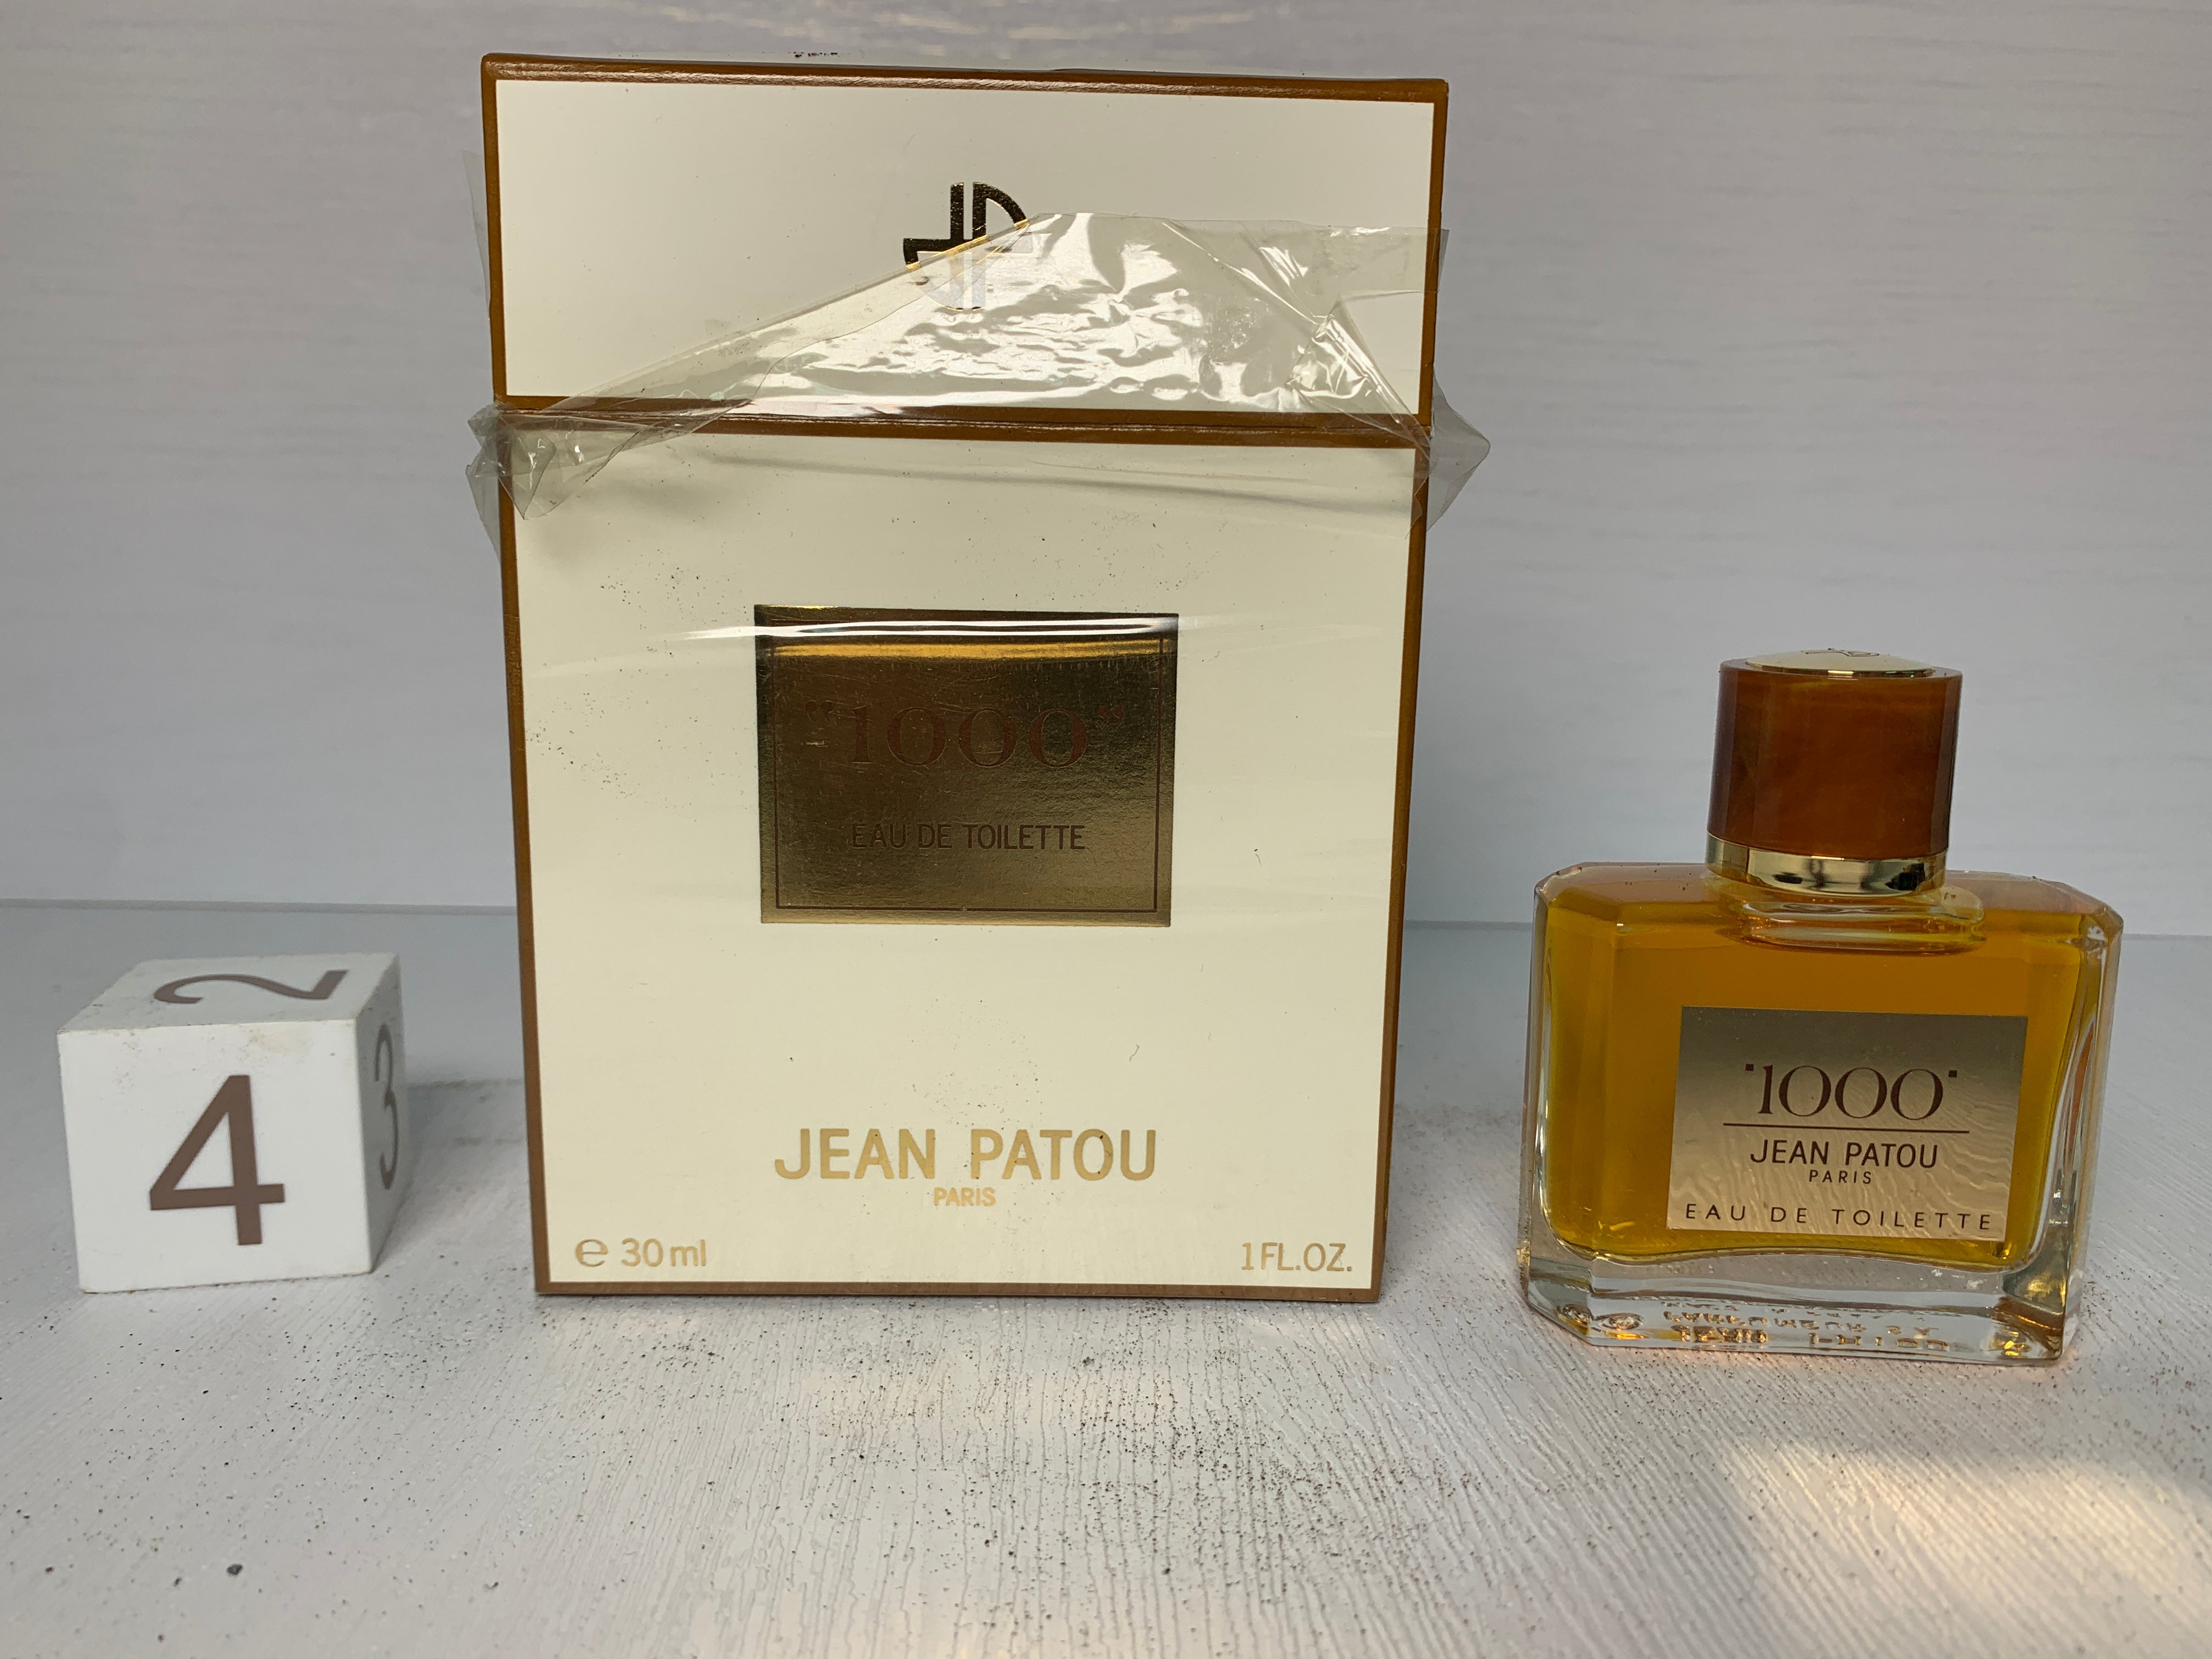 Jean Patou 1000 45ml EDT Eau de toilette parfum - 14NOV